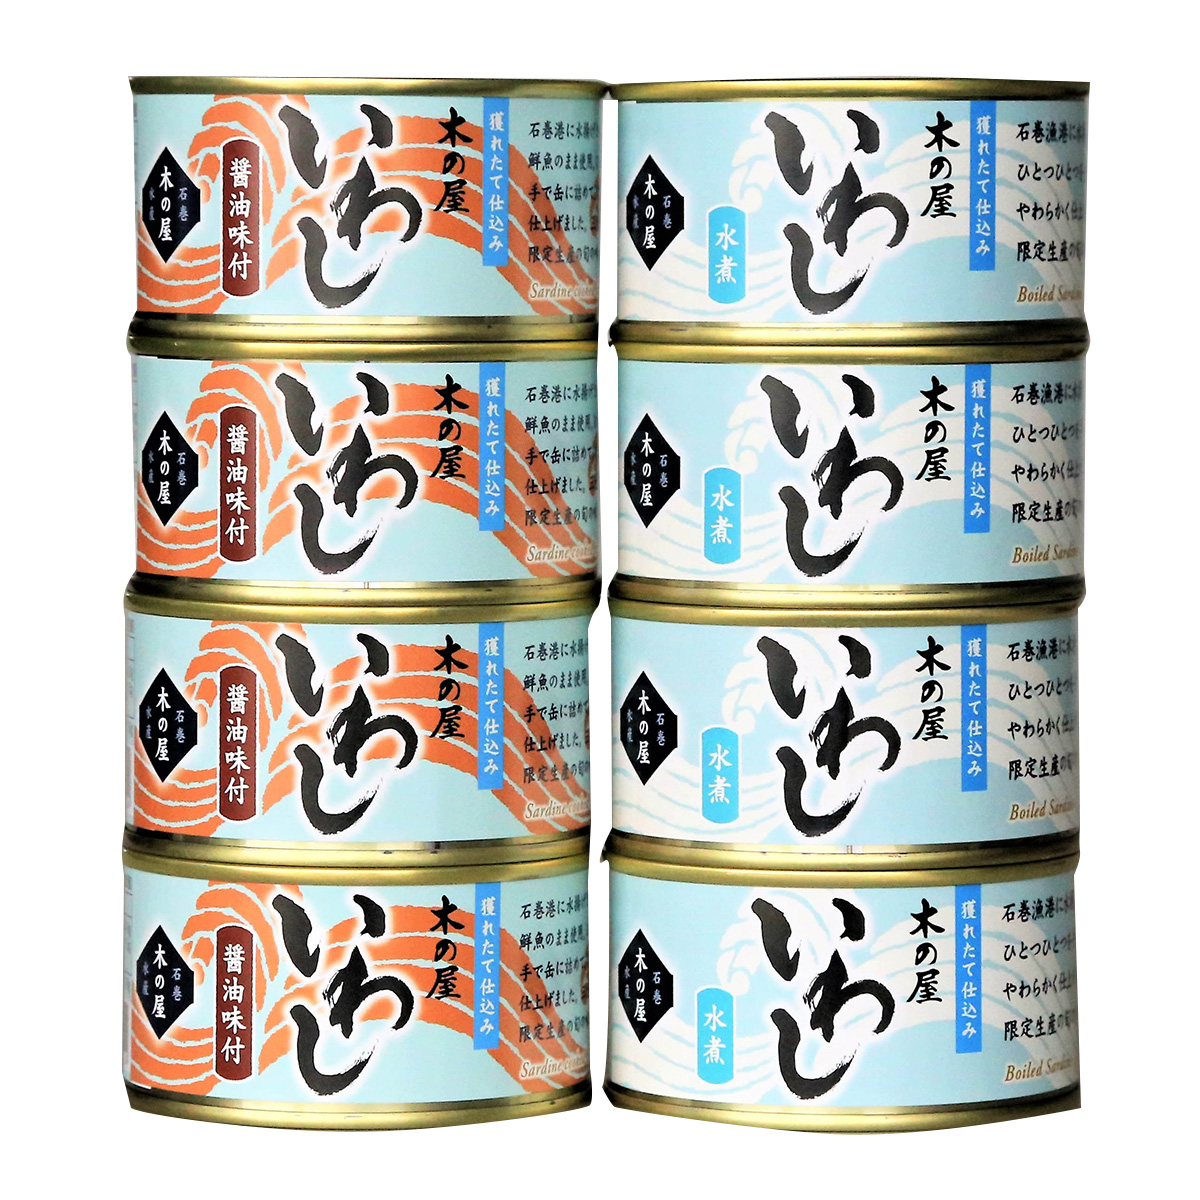 ひかりＴＶショッピング | 宮城県フレッシュパックいわし2種8缶セット